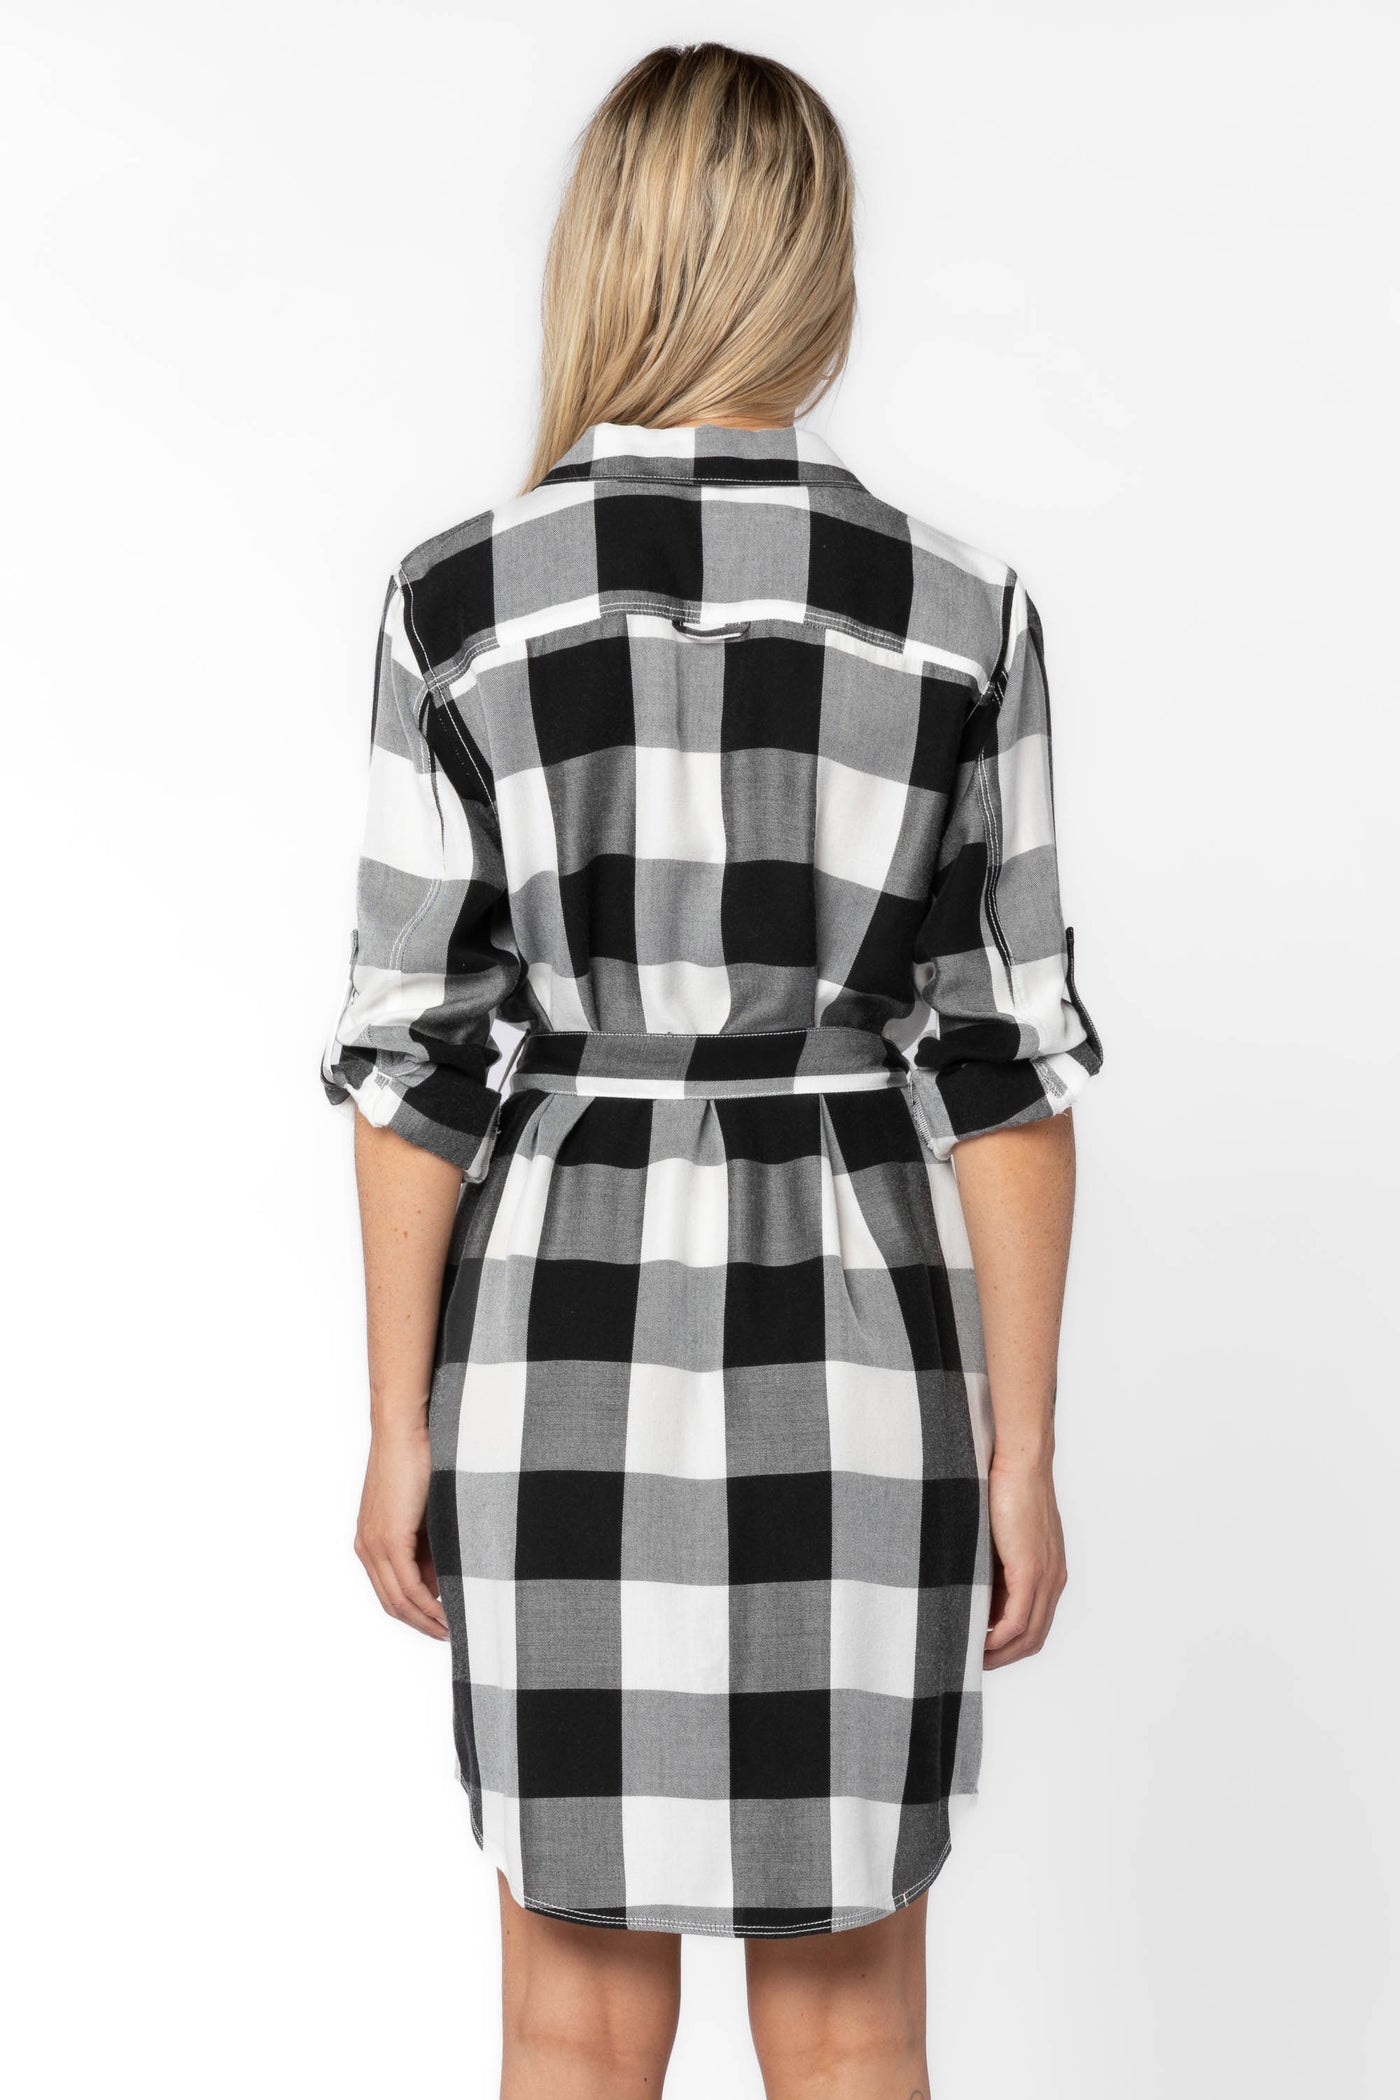 Anita Black Check Dress - Dresses - Velvet Heart Clothing